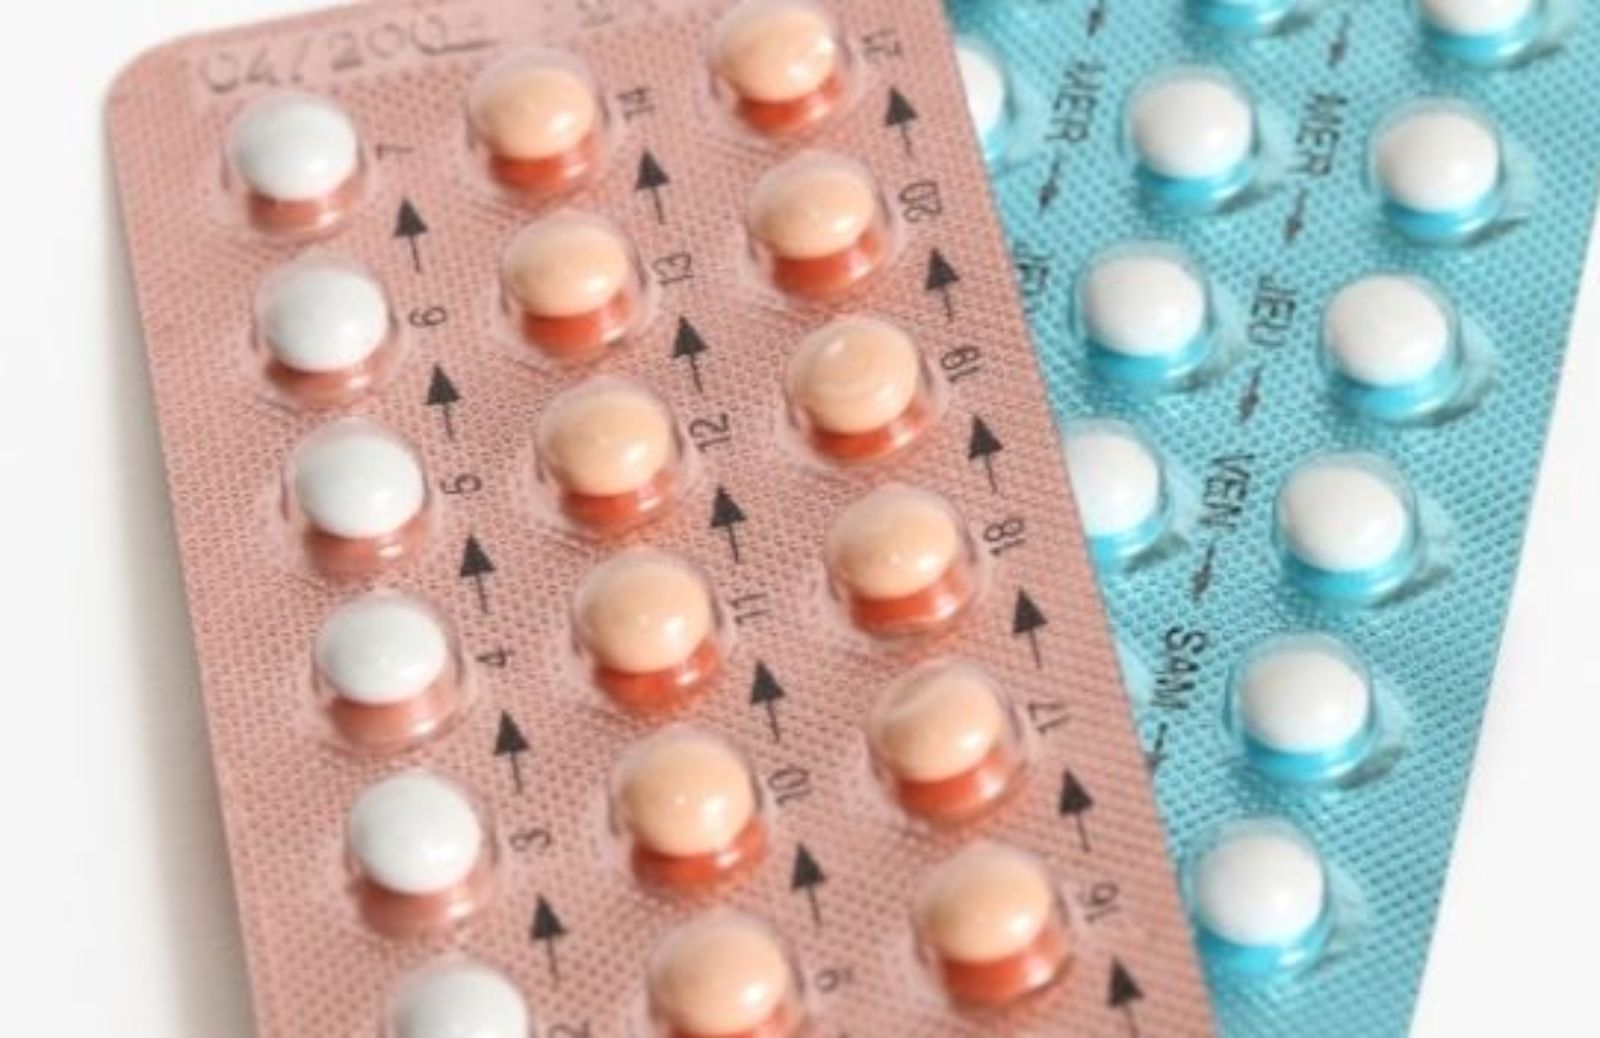 Come la pillola anticoncezionale causa un calo del desiderio